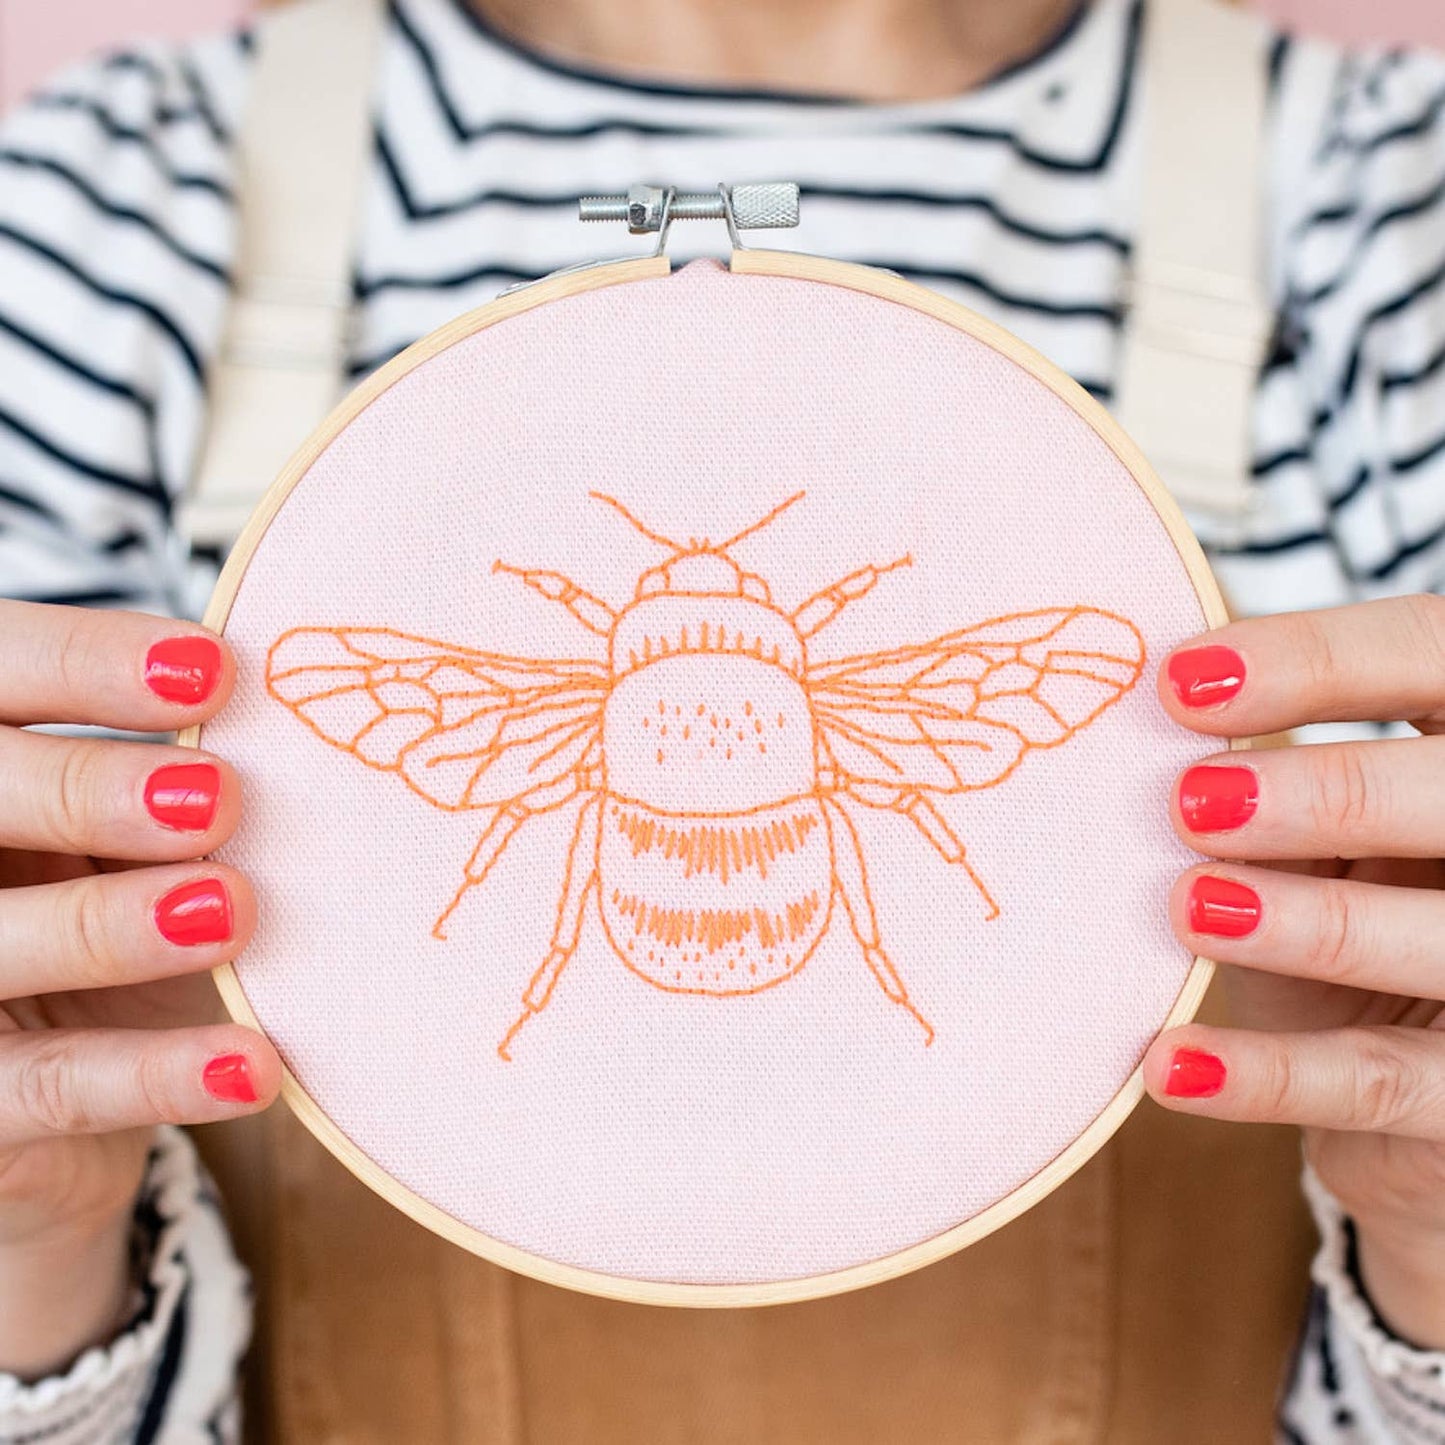 Bee Embroidery Hoop Kit